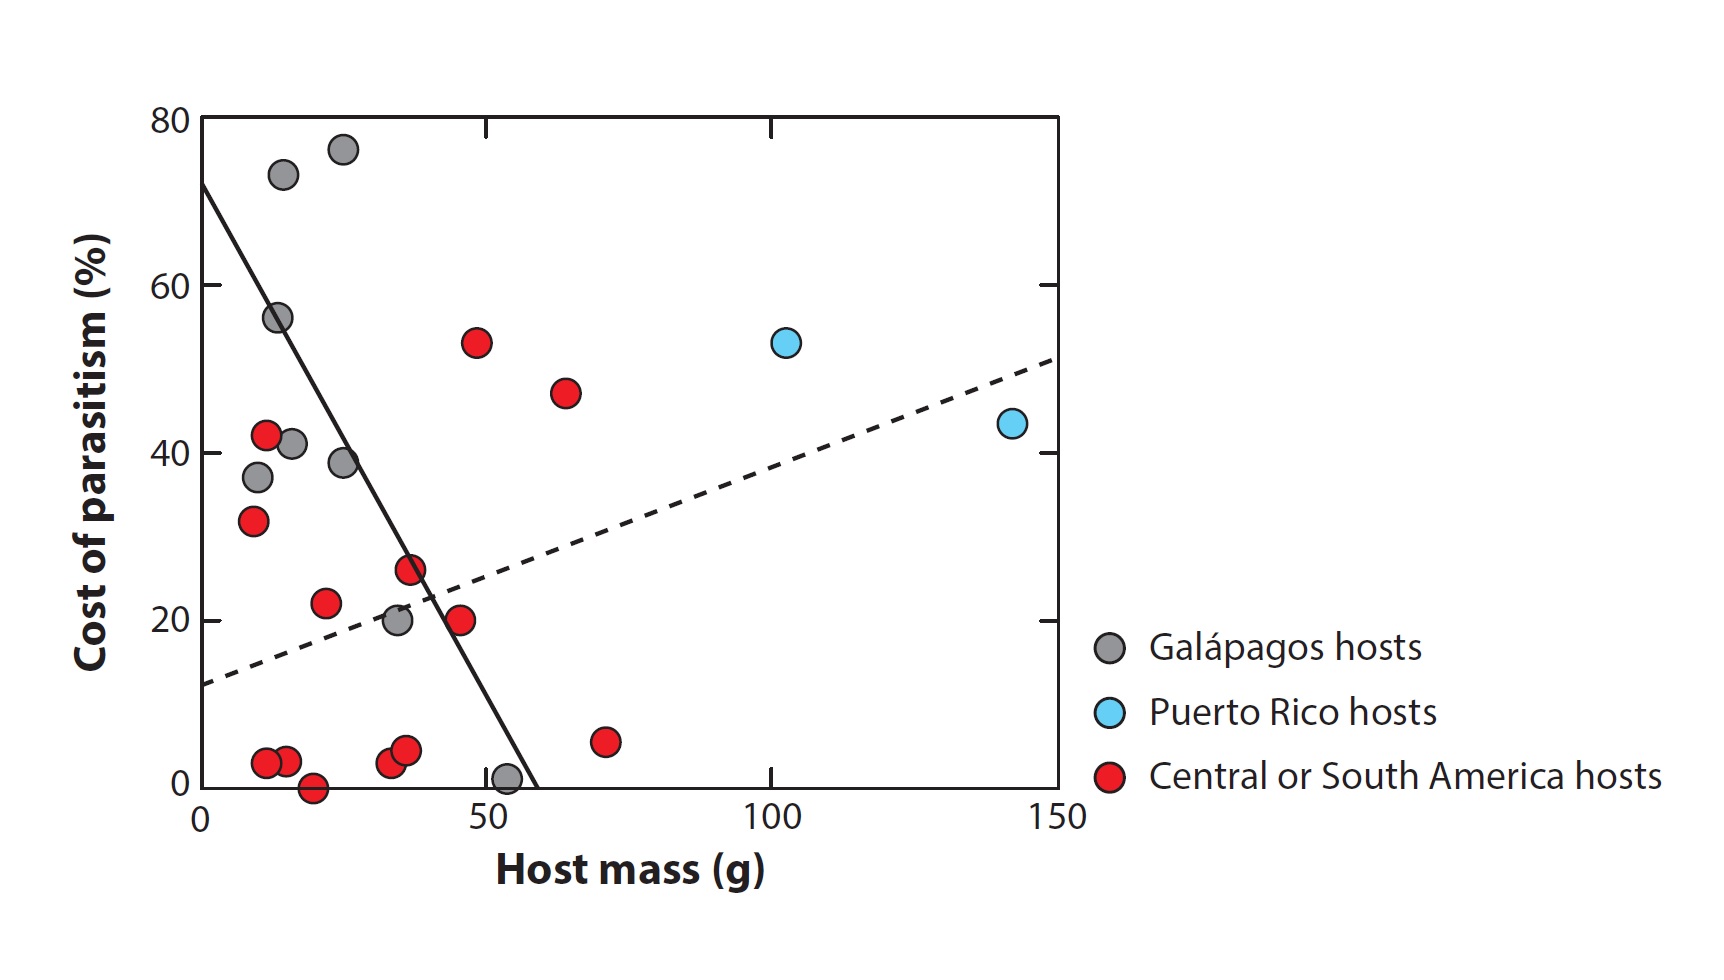 Relación entre la masa corporal de los pollos y los costes del parasitismo de Philornis downsi. Cada punto gris es una especie de pinzón de Darwin, los azules son aves de Puerto Rico y los rojos aves del sur y centro de América. Fuente: Sabrina M. McNew y Dale H. Clayton (2018).